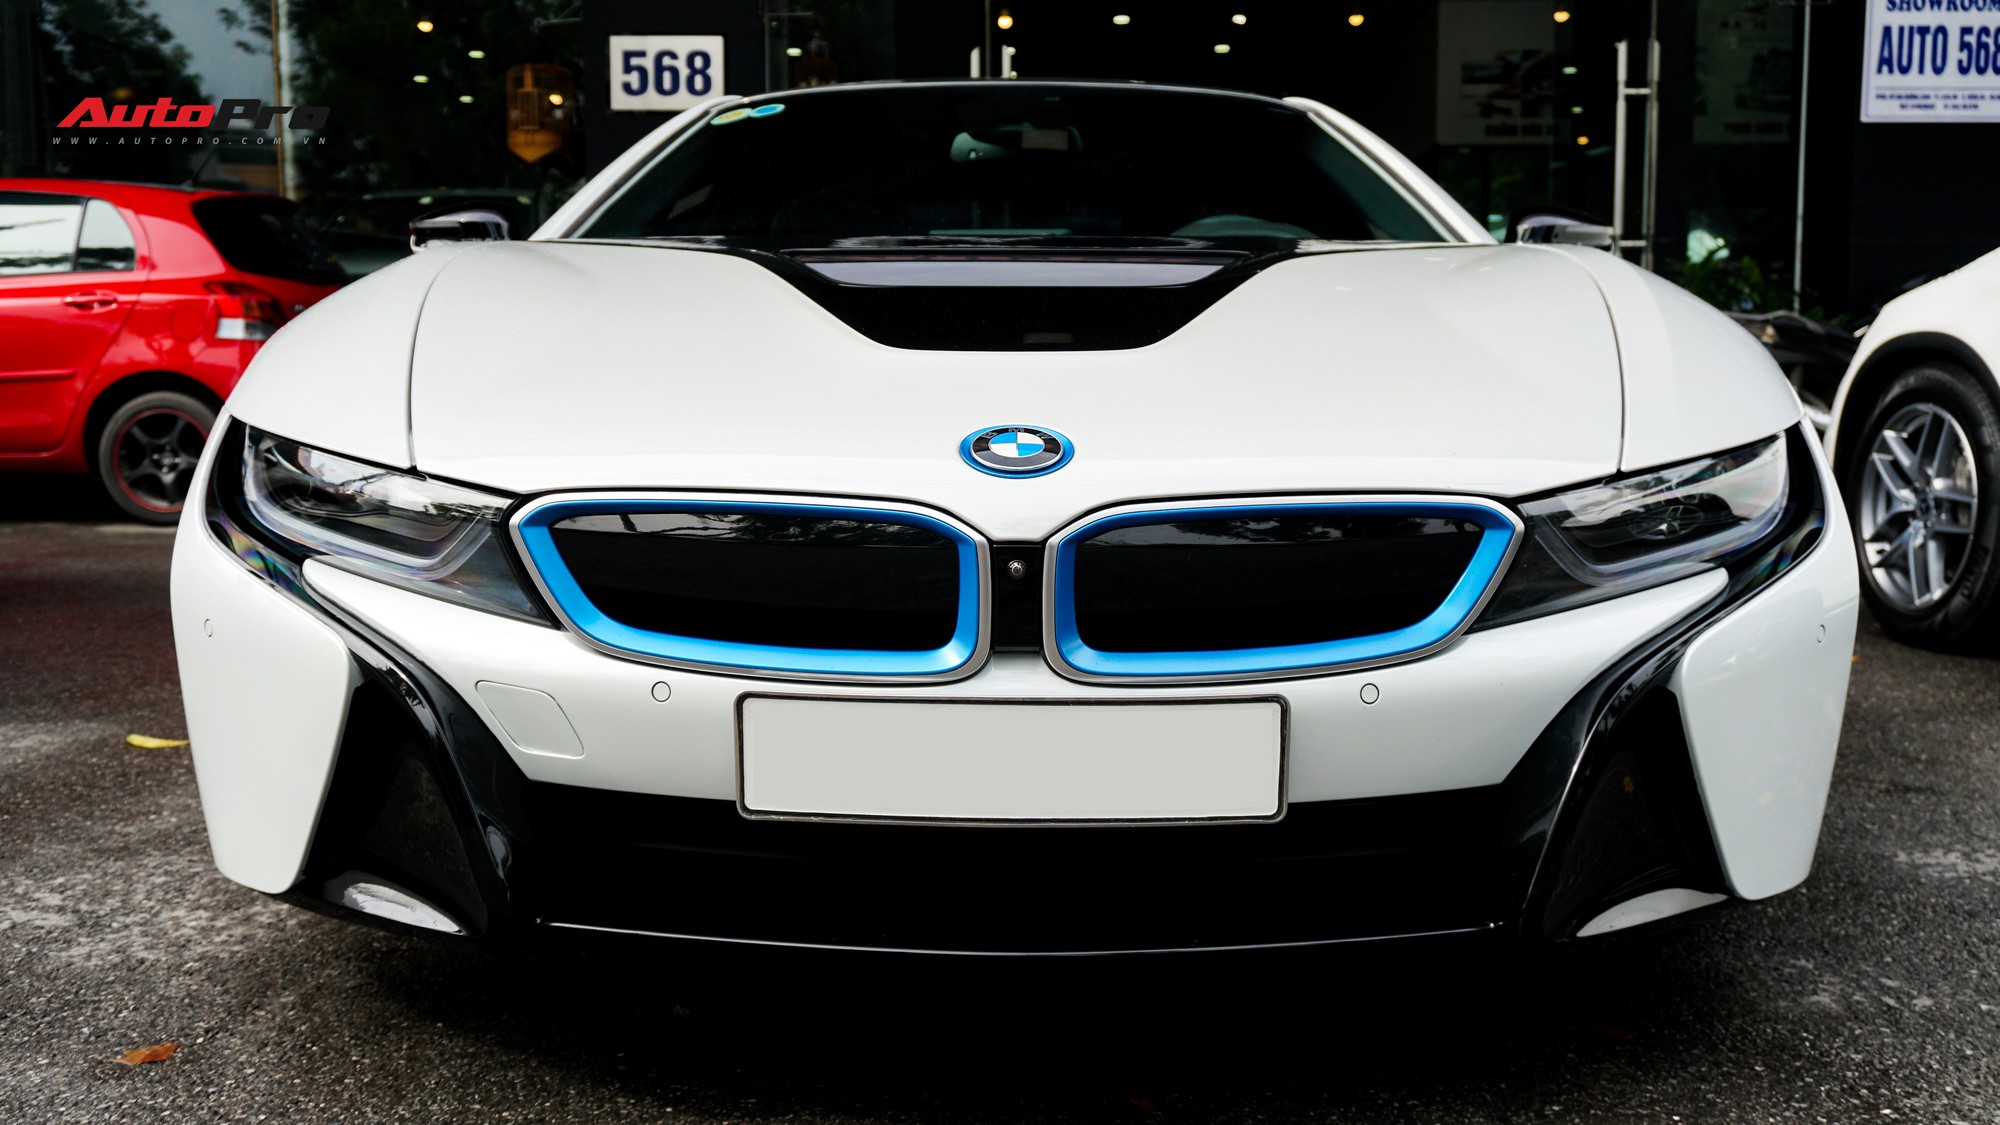 Nếu bạn đam mê những chiếc xe điện và đang muốn tìm hiểu về một trong những mẫu xe xuất sắc nhất với giá hợp lí, BMW i8 chắc chắn là lựa chọn tuyệt vời cho bạn. Hãy xem hình ảnh và cảm nhận sự khác biệt mà chiếc xe này mang lại.